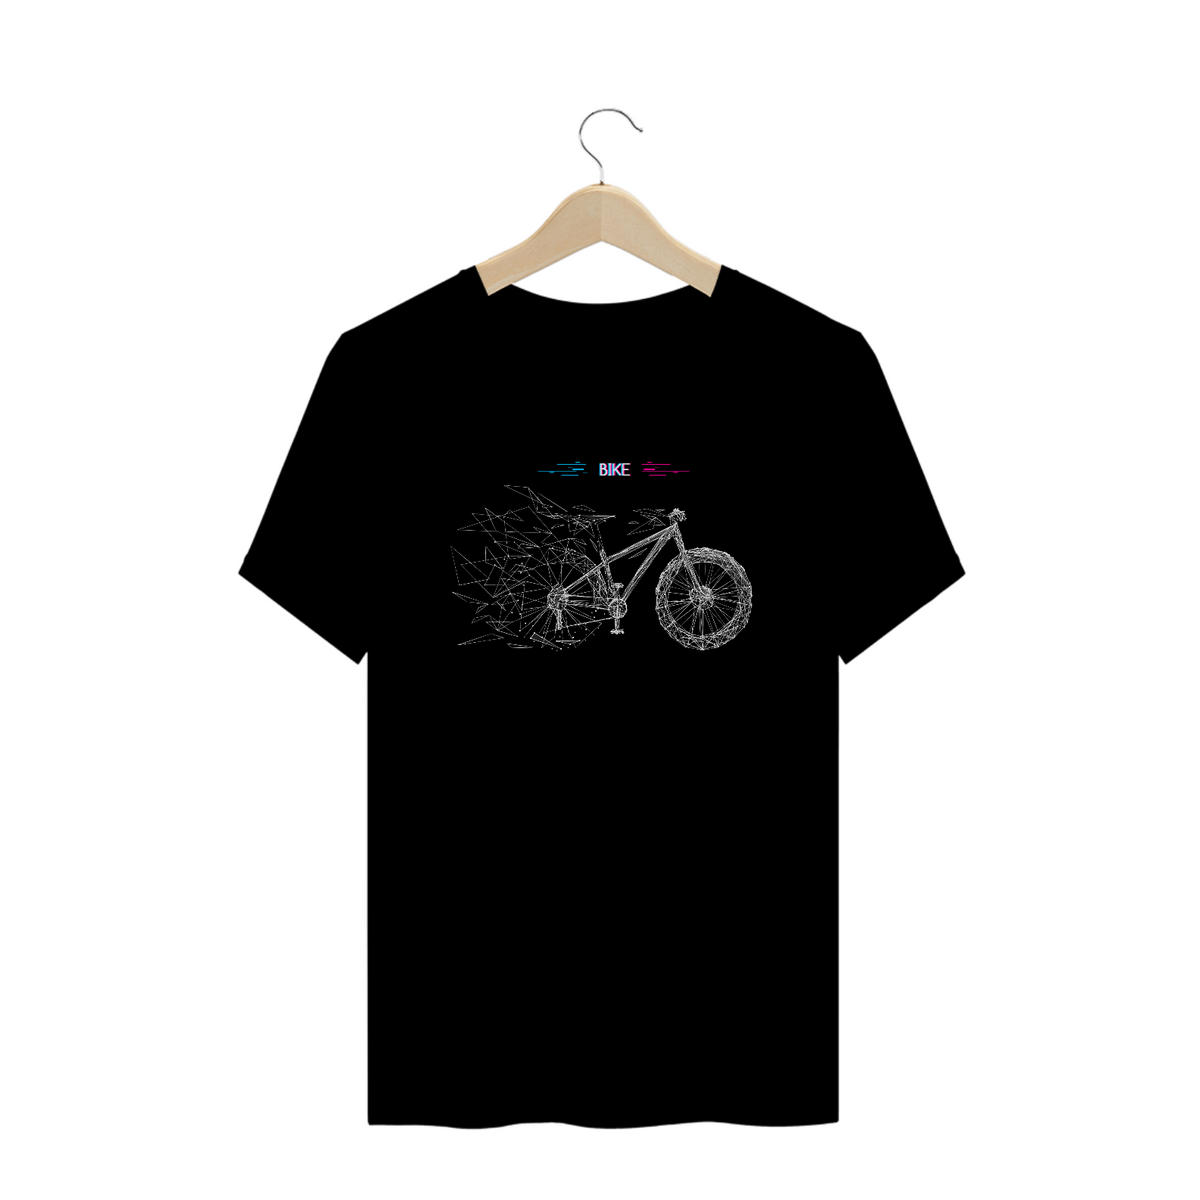 Nome do produto: Camiseta Prime Bike Vidro